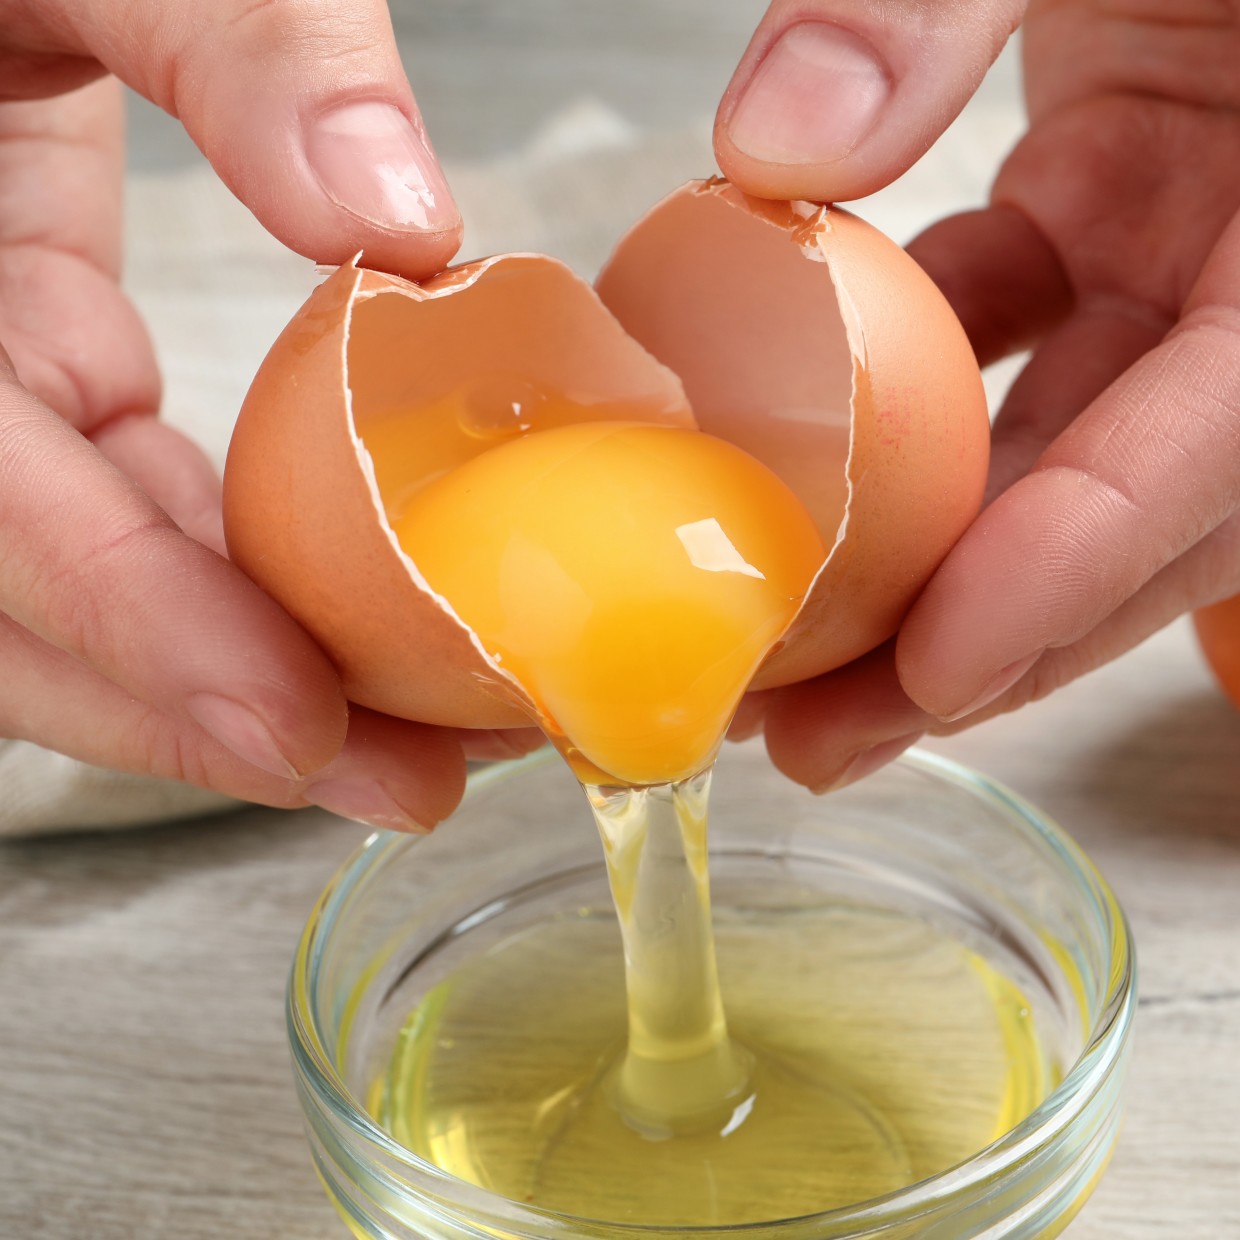  「卵」の栄養価をもっとも効率的に摂取できる食べ方とは？【管理栄養士が解説】 